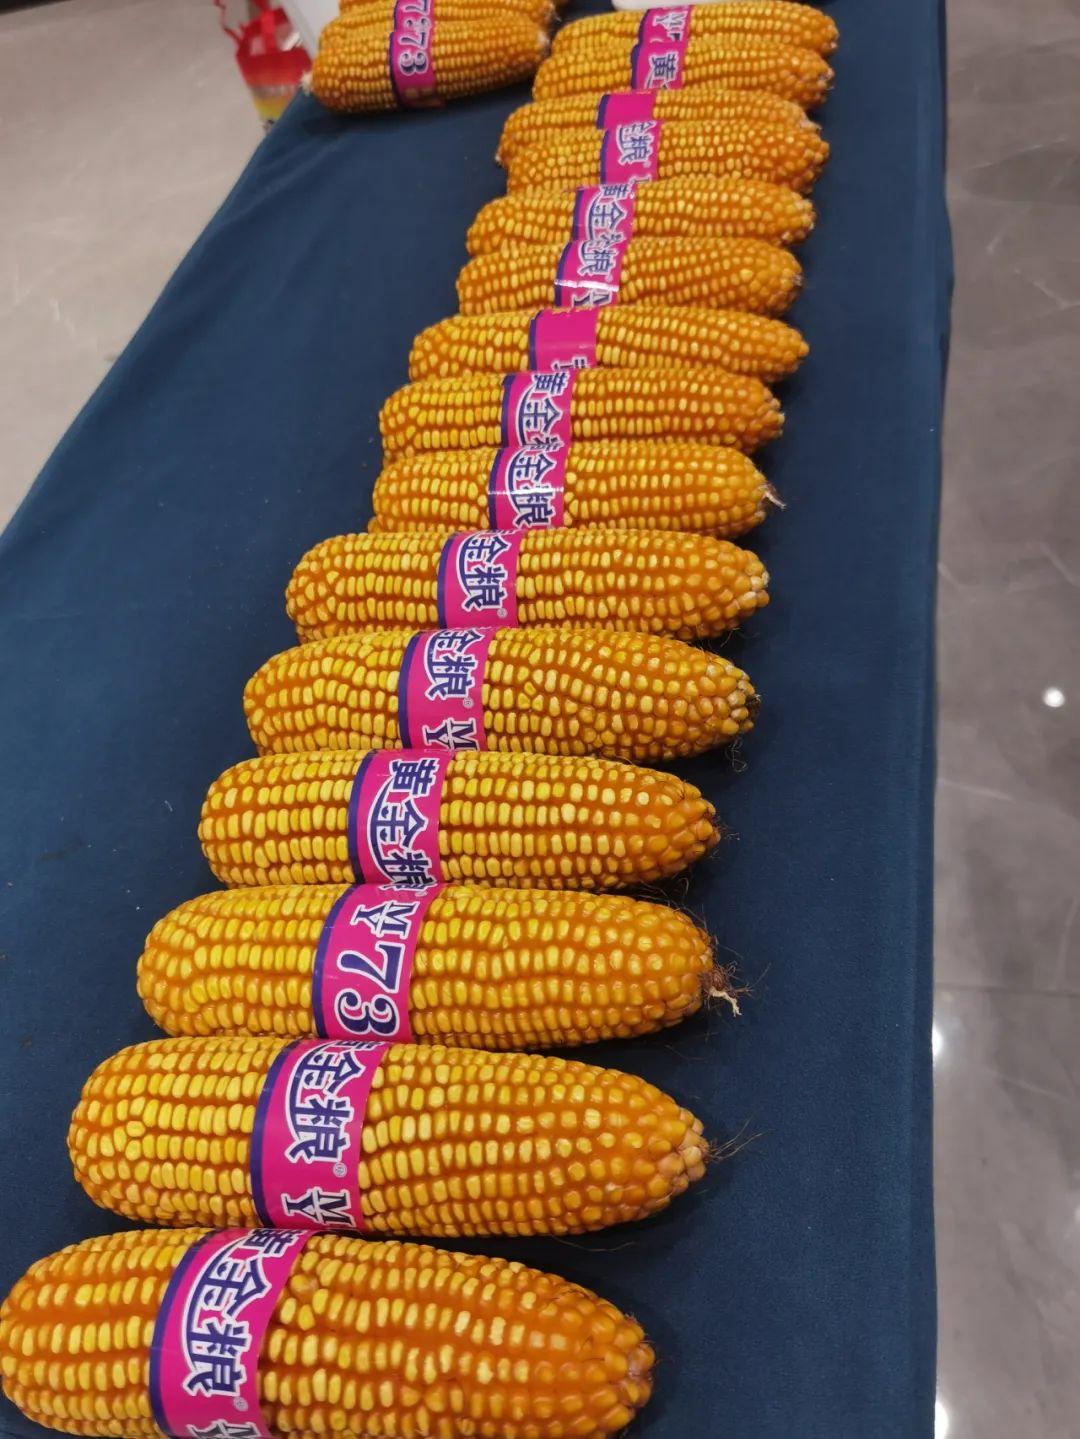 福盛园57玉米品种简介图片